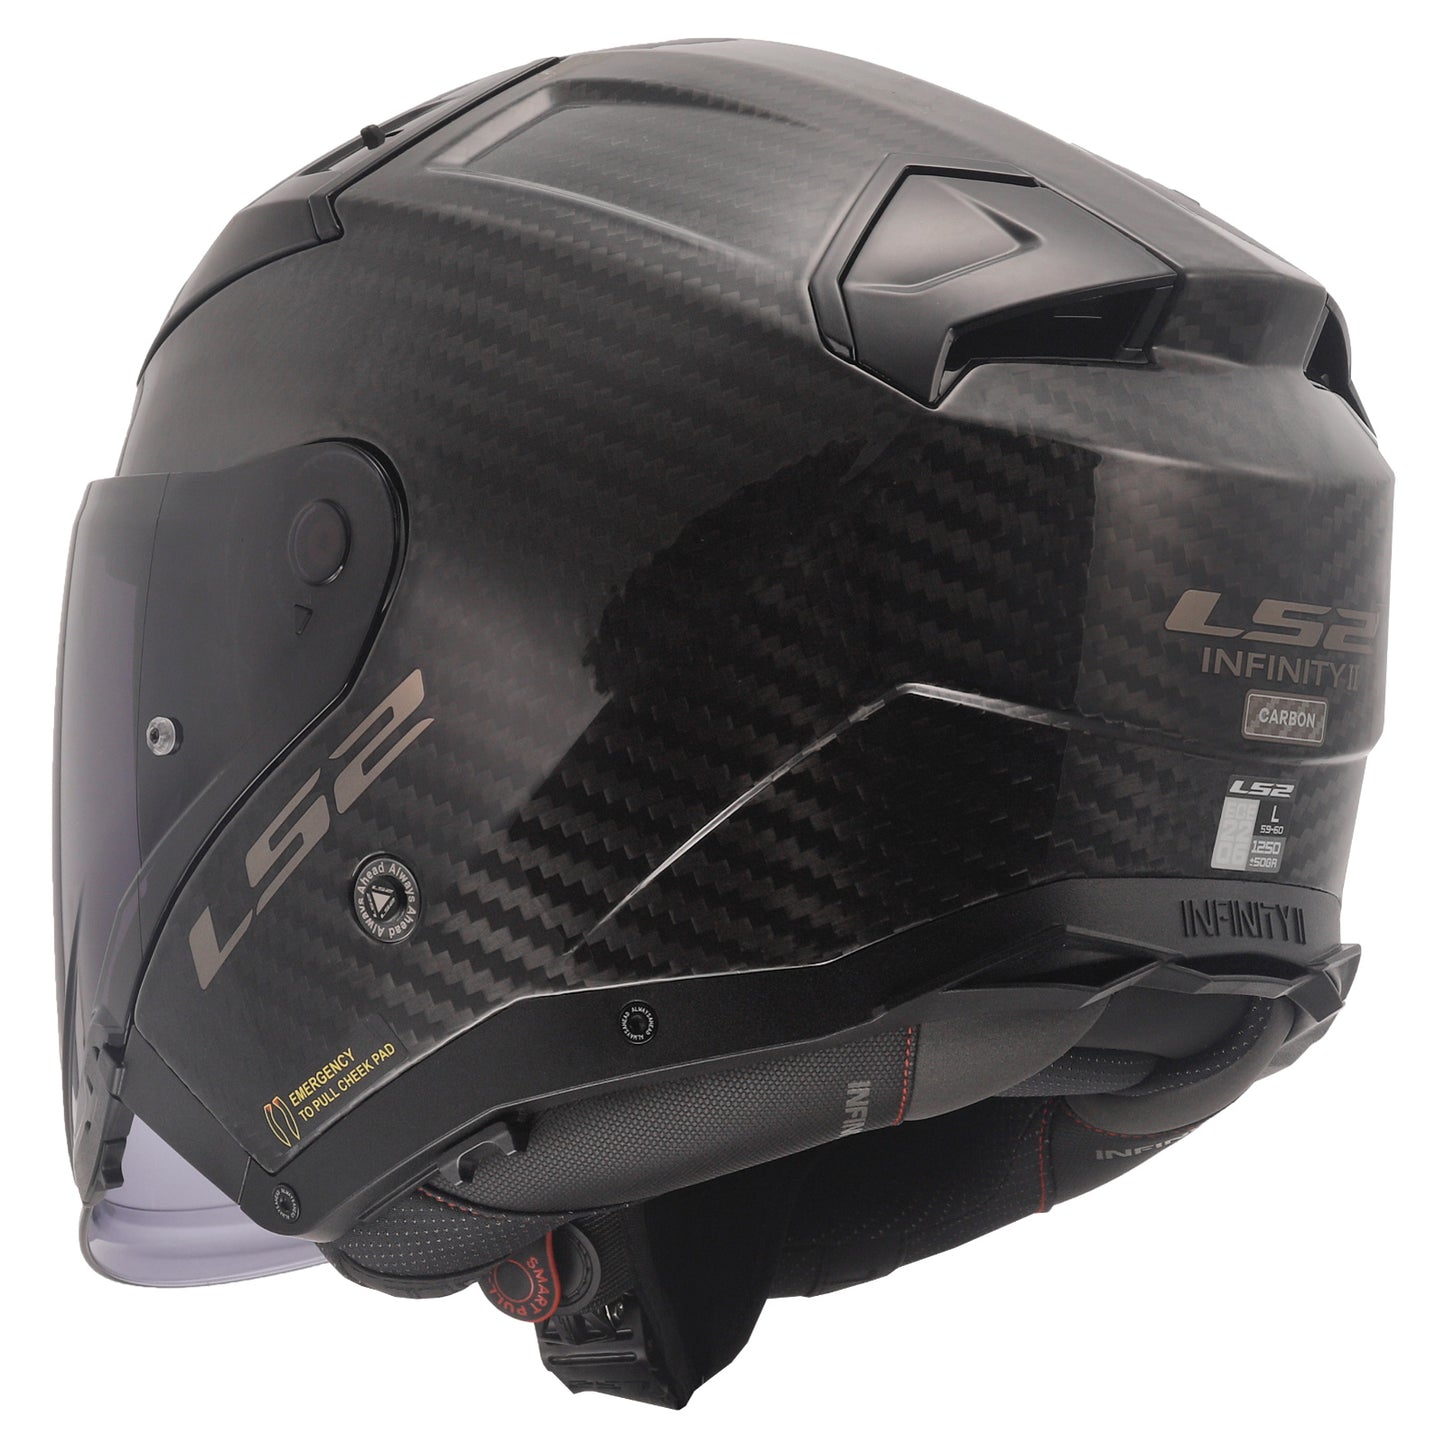 LS2 OF603 INFINITY II Carbon Open Face Helmet